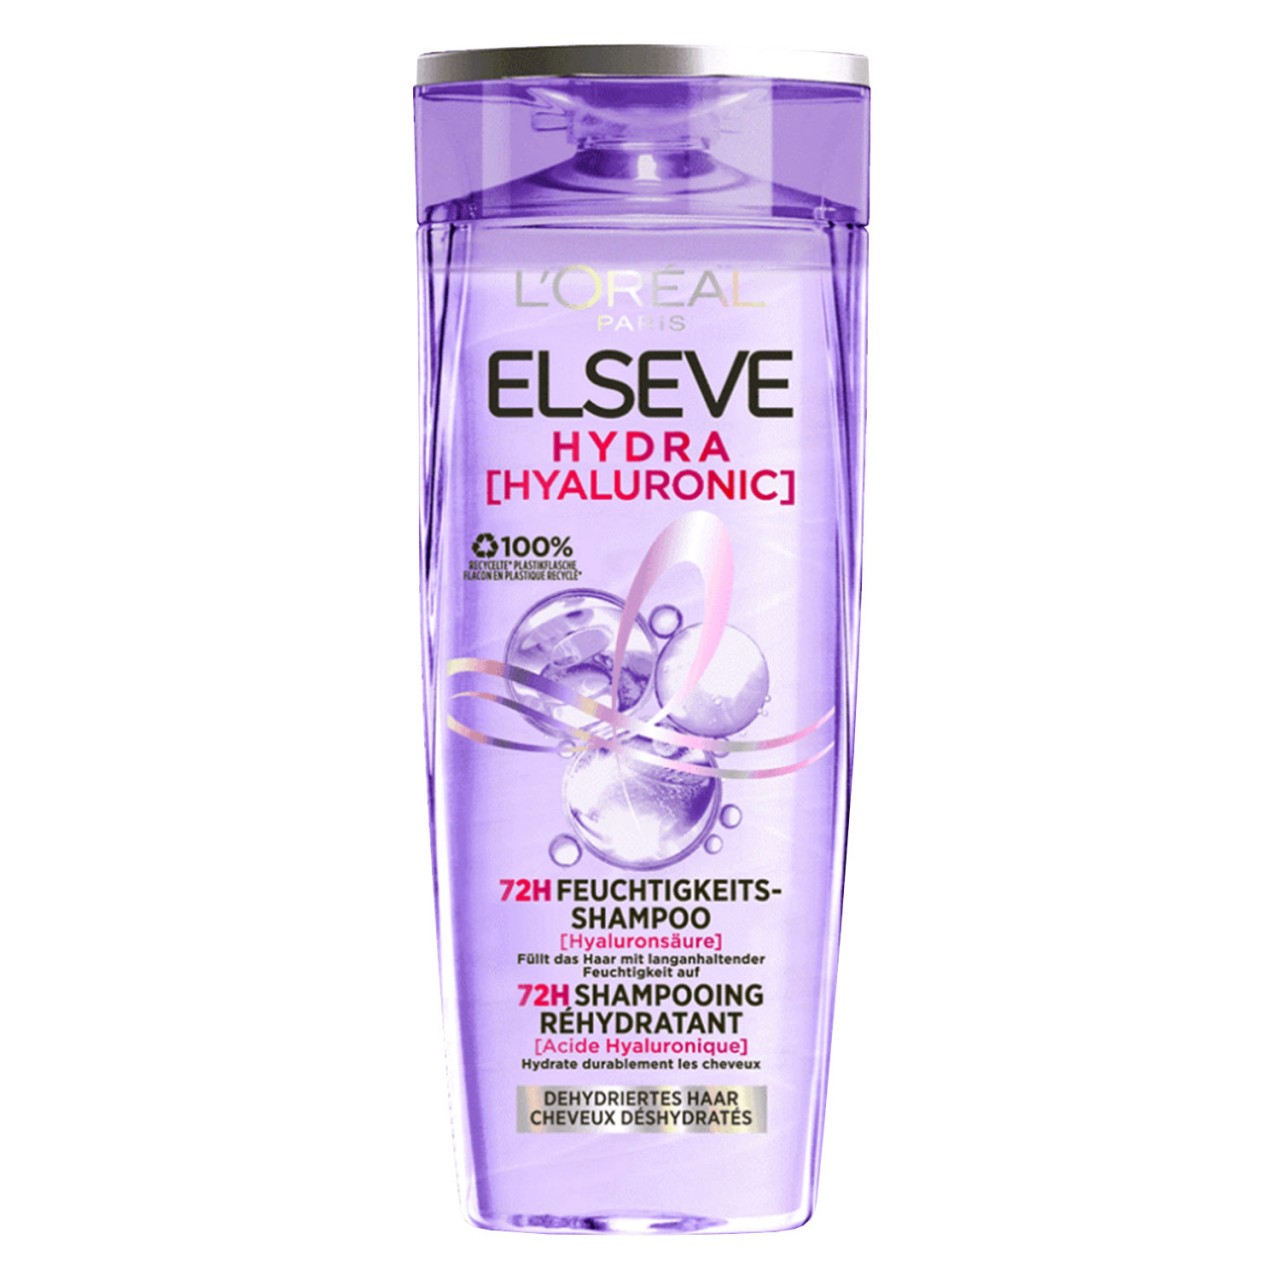 LOréal Elseve Haircare - Hydra Hyaluronic 72H Feuchtigkeits-Shampoo von L'Oréal Paris